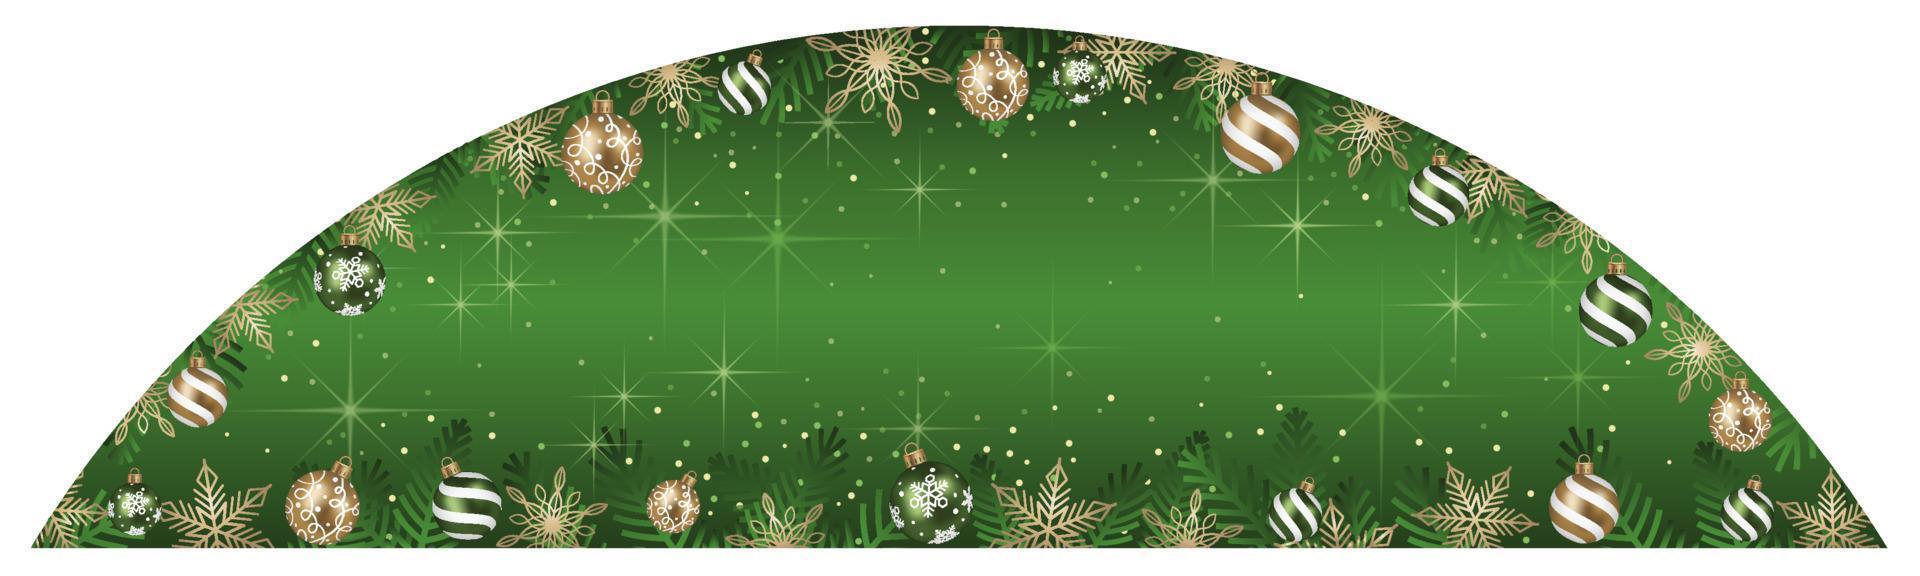 illustration abstraite de cadre d'arc de vecteur avec des boules de Noël et un fond vert lumineux d'isolement sur un fond blanc.